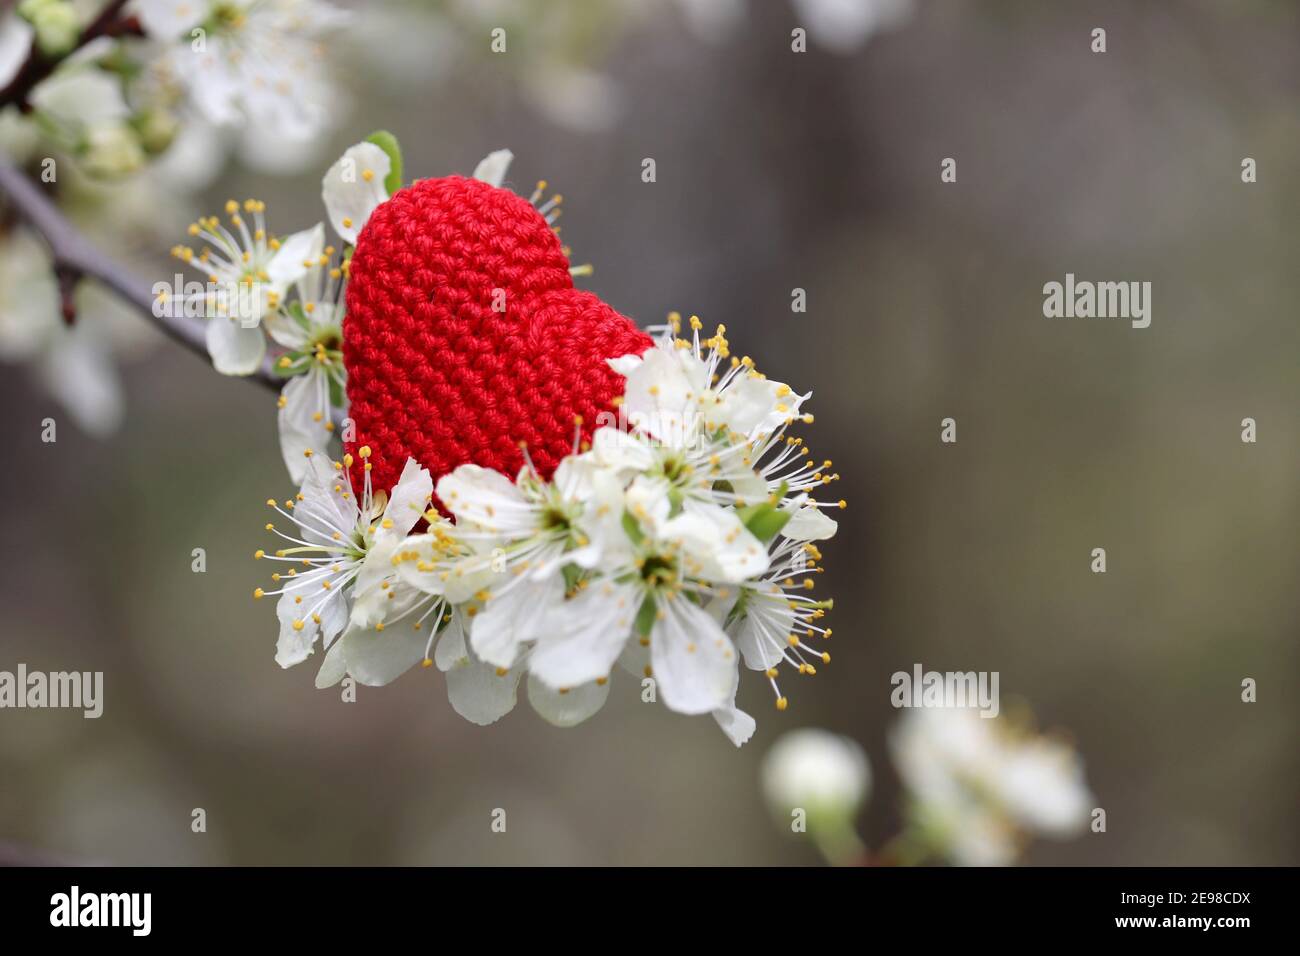 Coeur de Saint-Valentin avec fleur de cerisier, foyer sélectif. Fleurs blanches et tricoté rouge symbole d'amour romantique sur une branche dans un jardin Banque D'Images